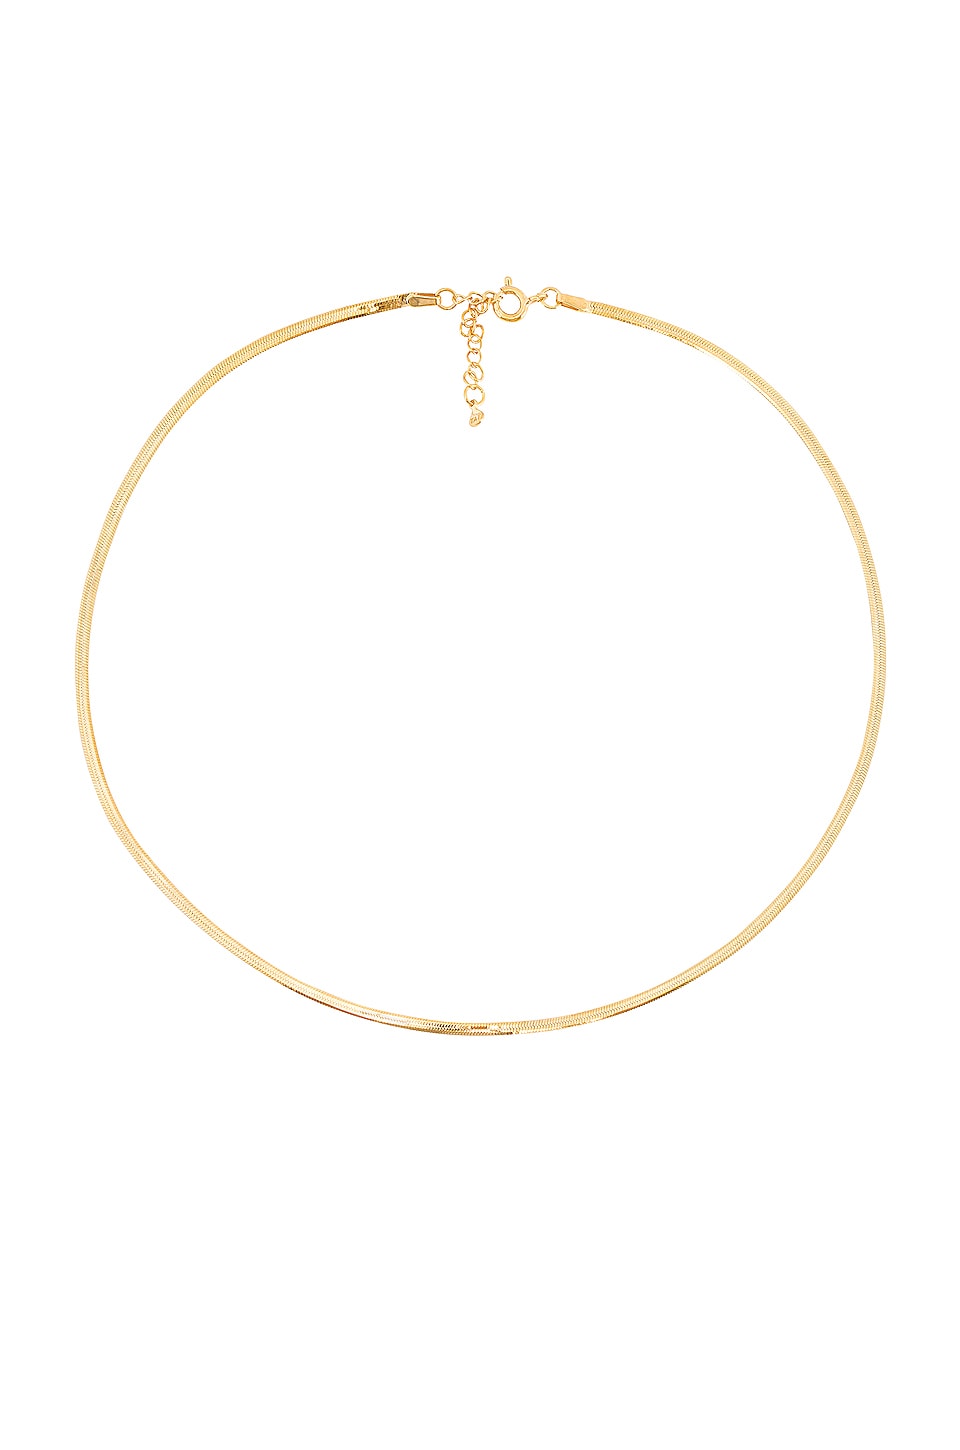 TAI Jewelry Thin Herringbone Chain 